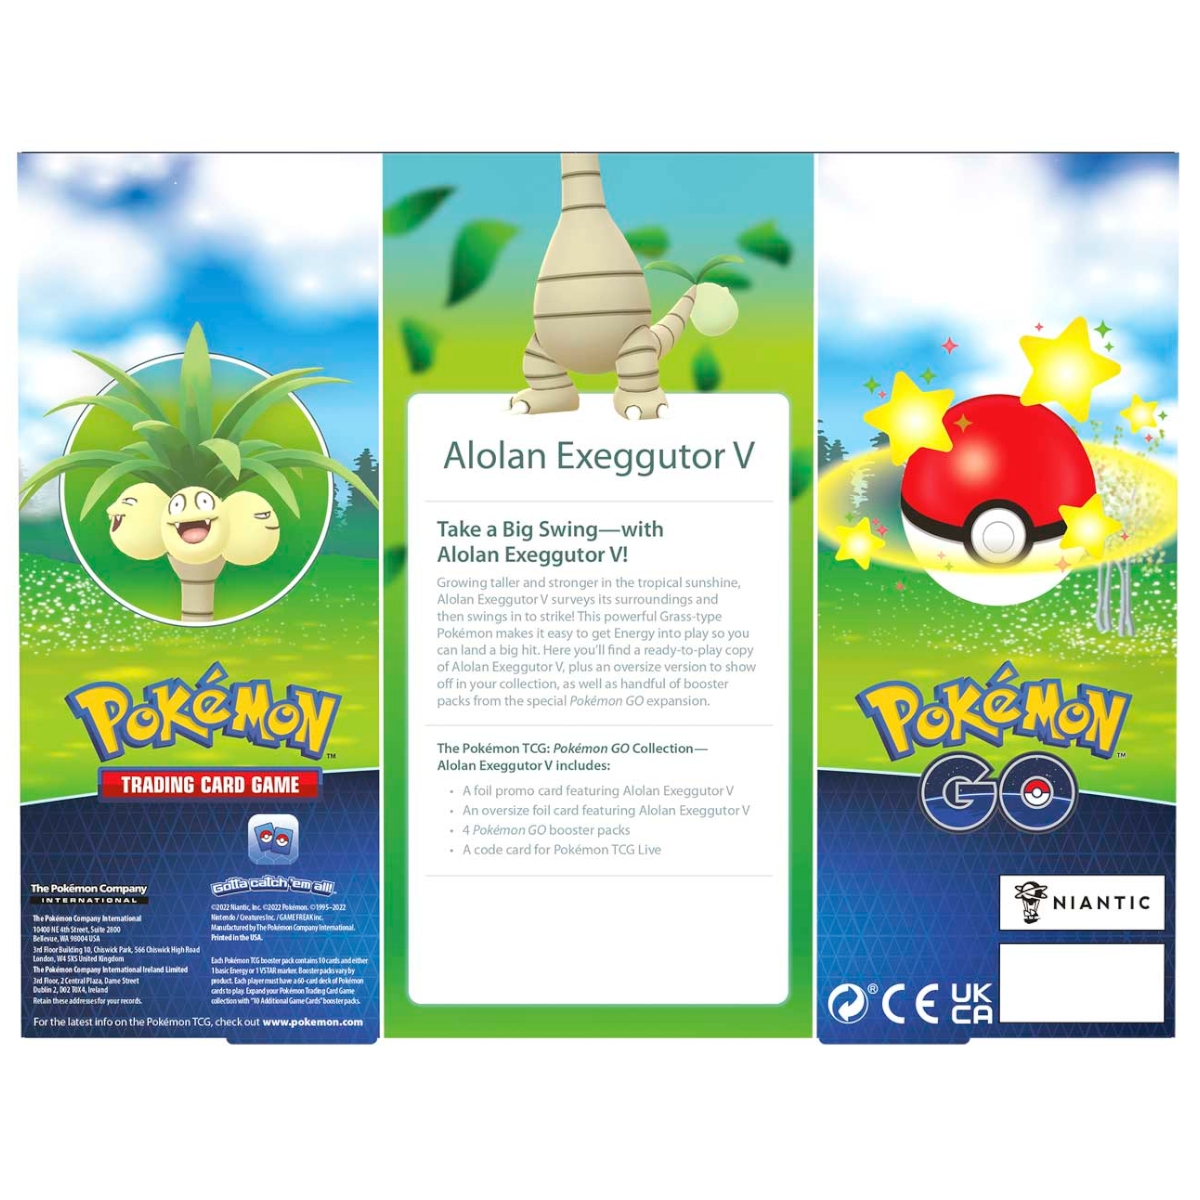 Pokémon GO - Collection Alolan Exeggutor V Box